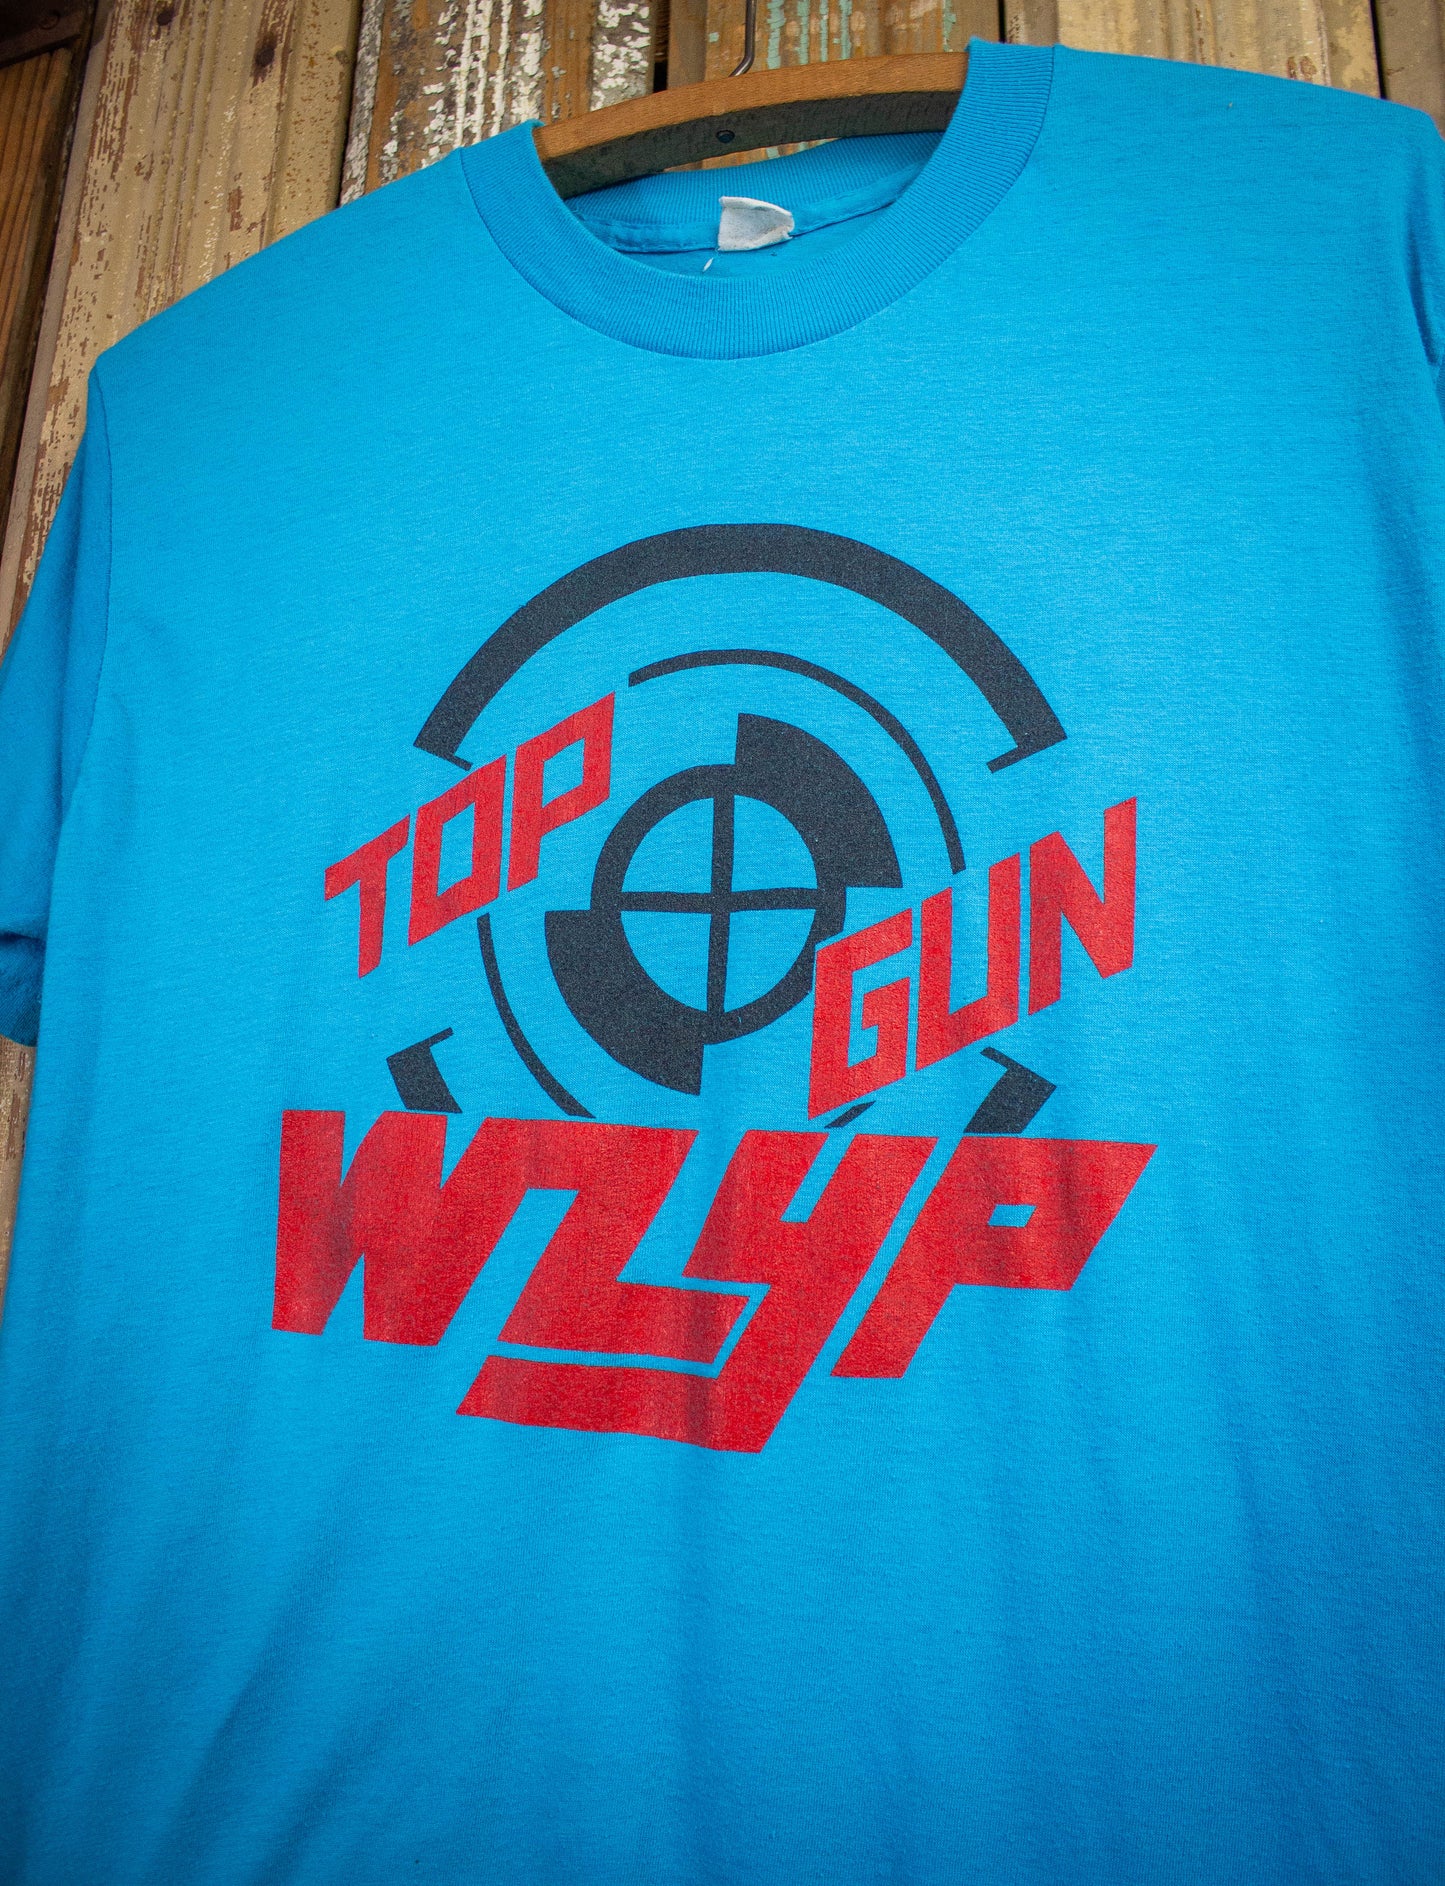 Vintage Top Gun WZYP Graphic T Shirt 80s Blue Medium